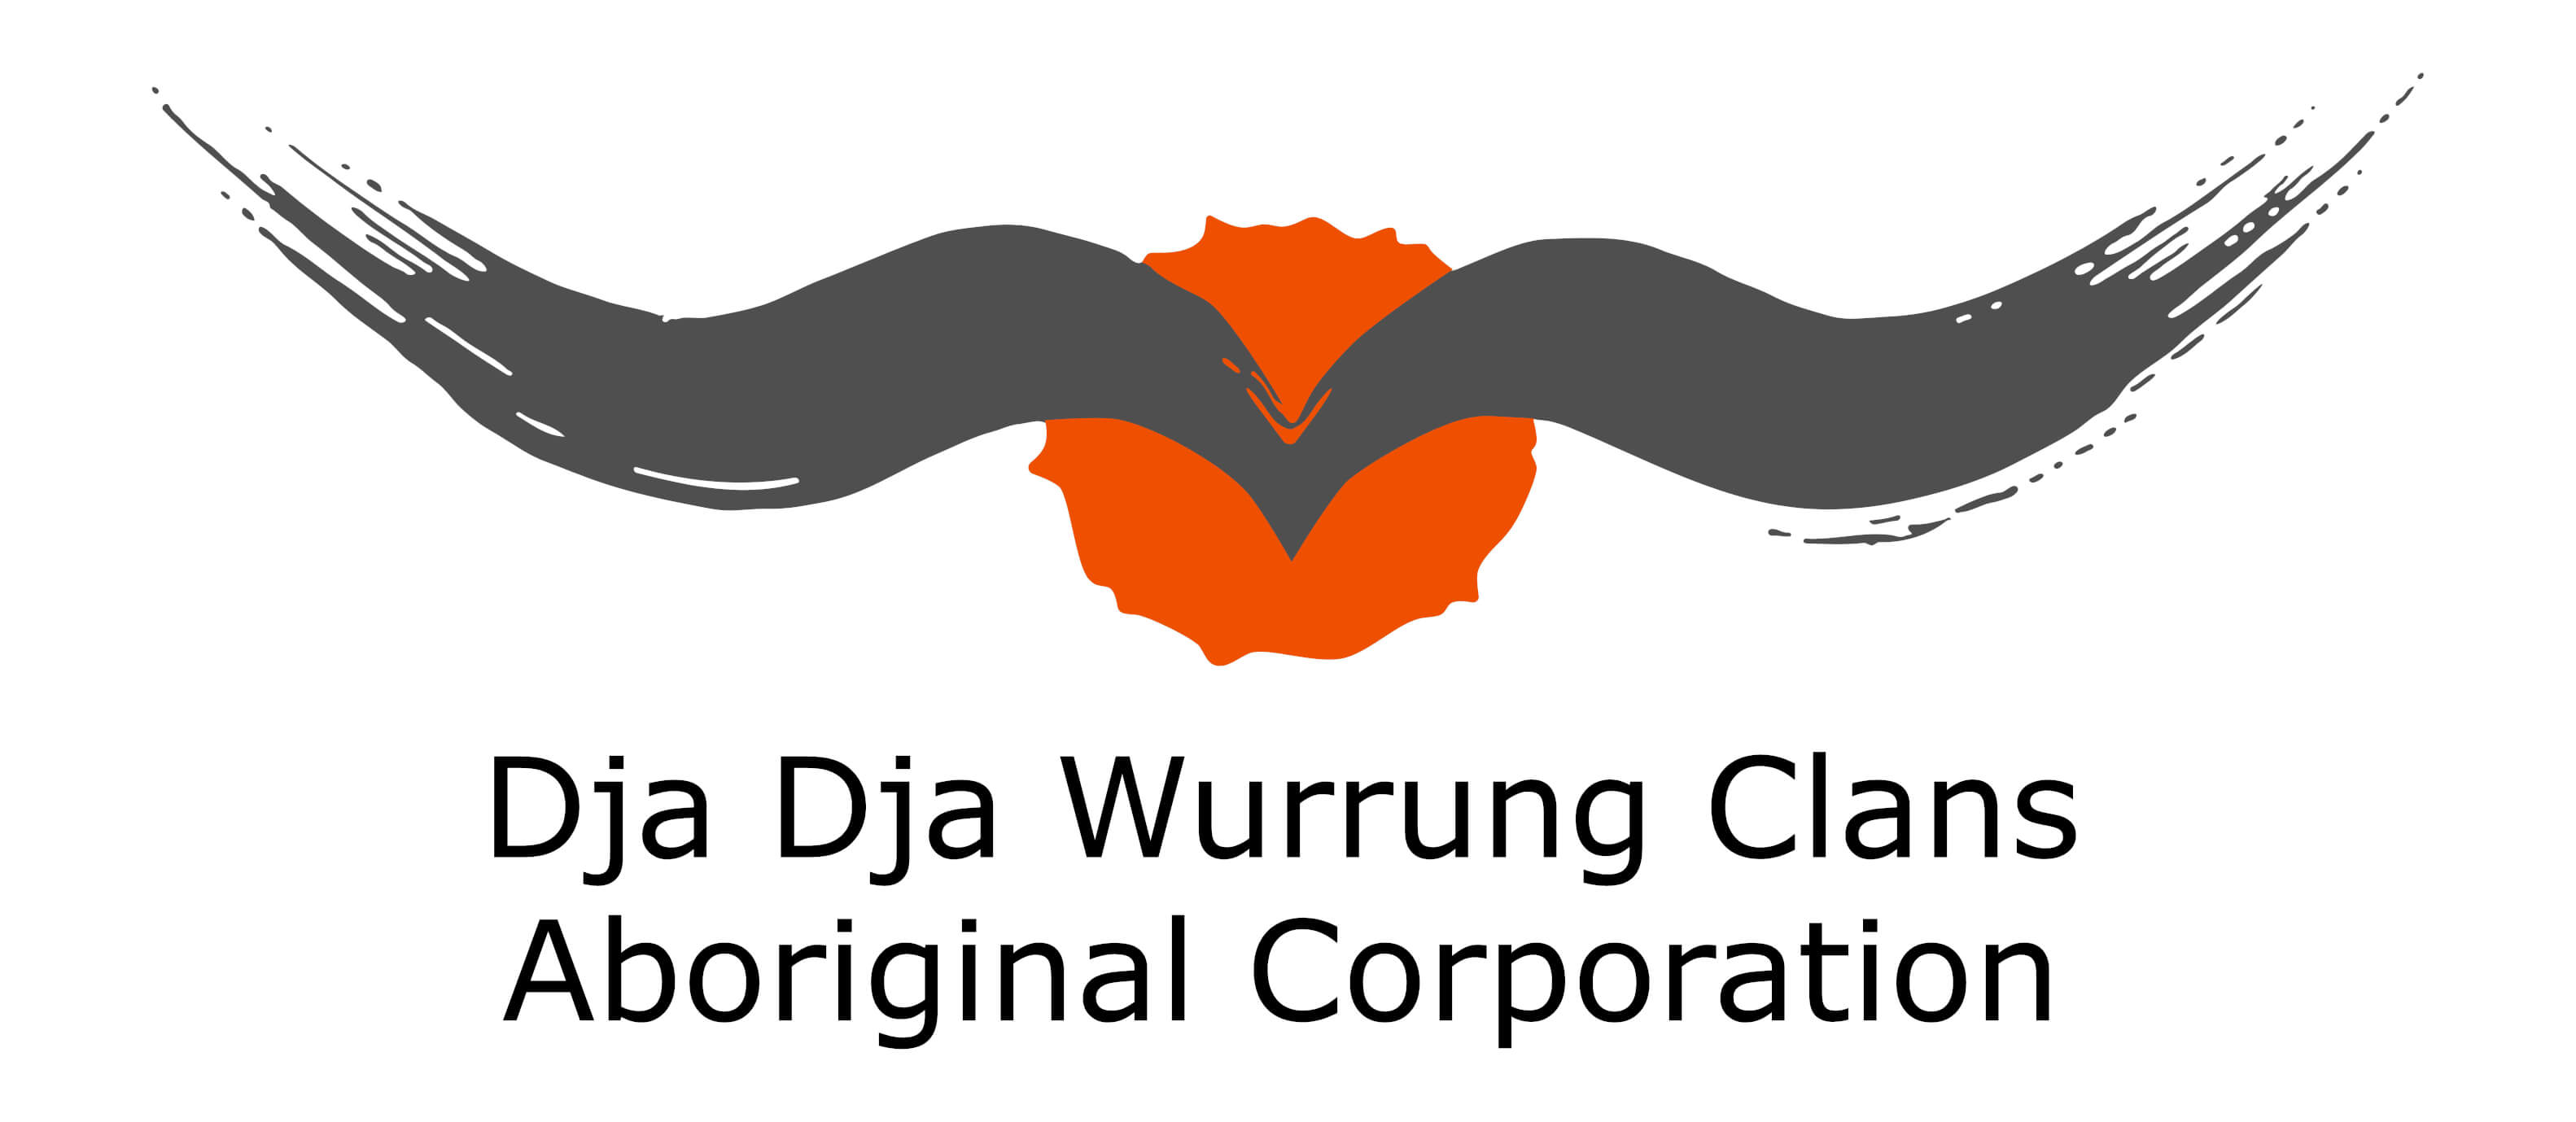 Dja Dja Wurrung Clans Aboriginal Corporation